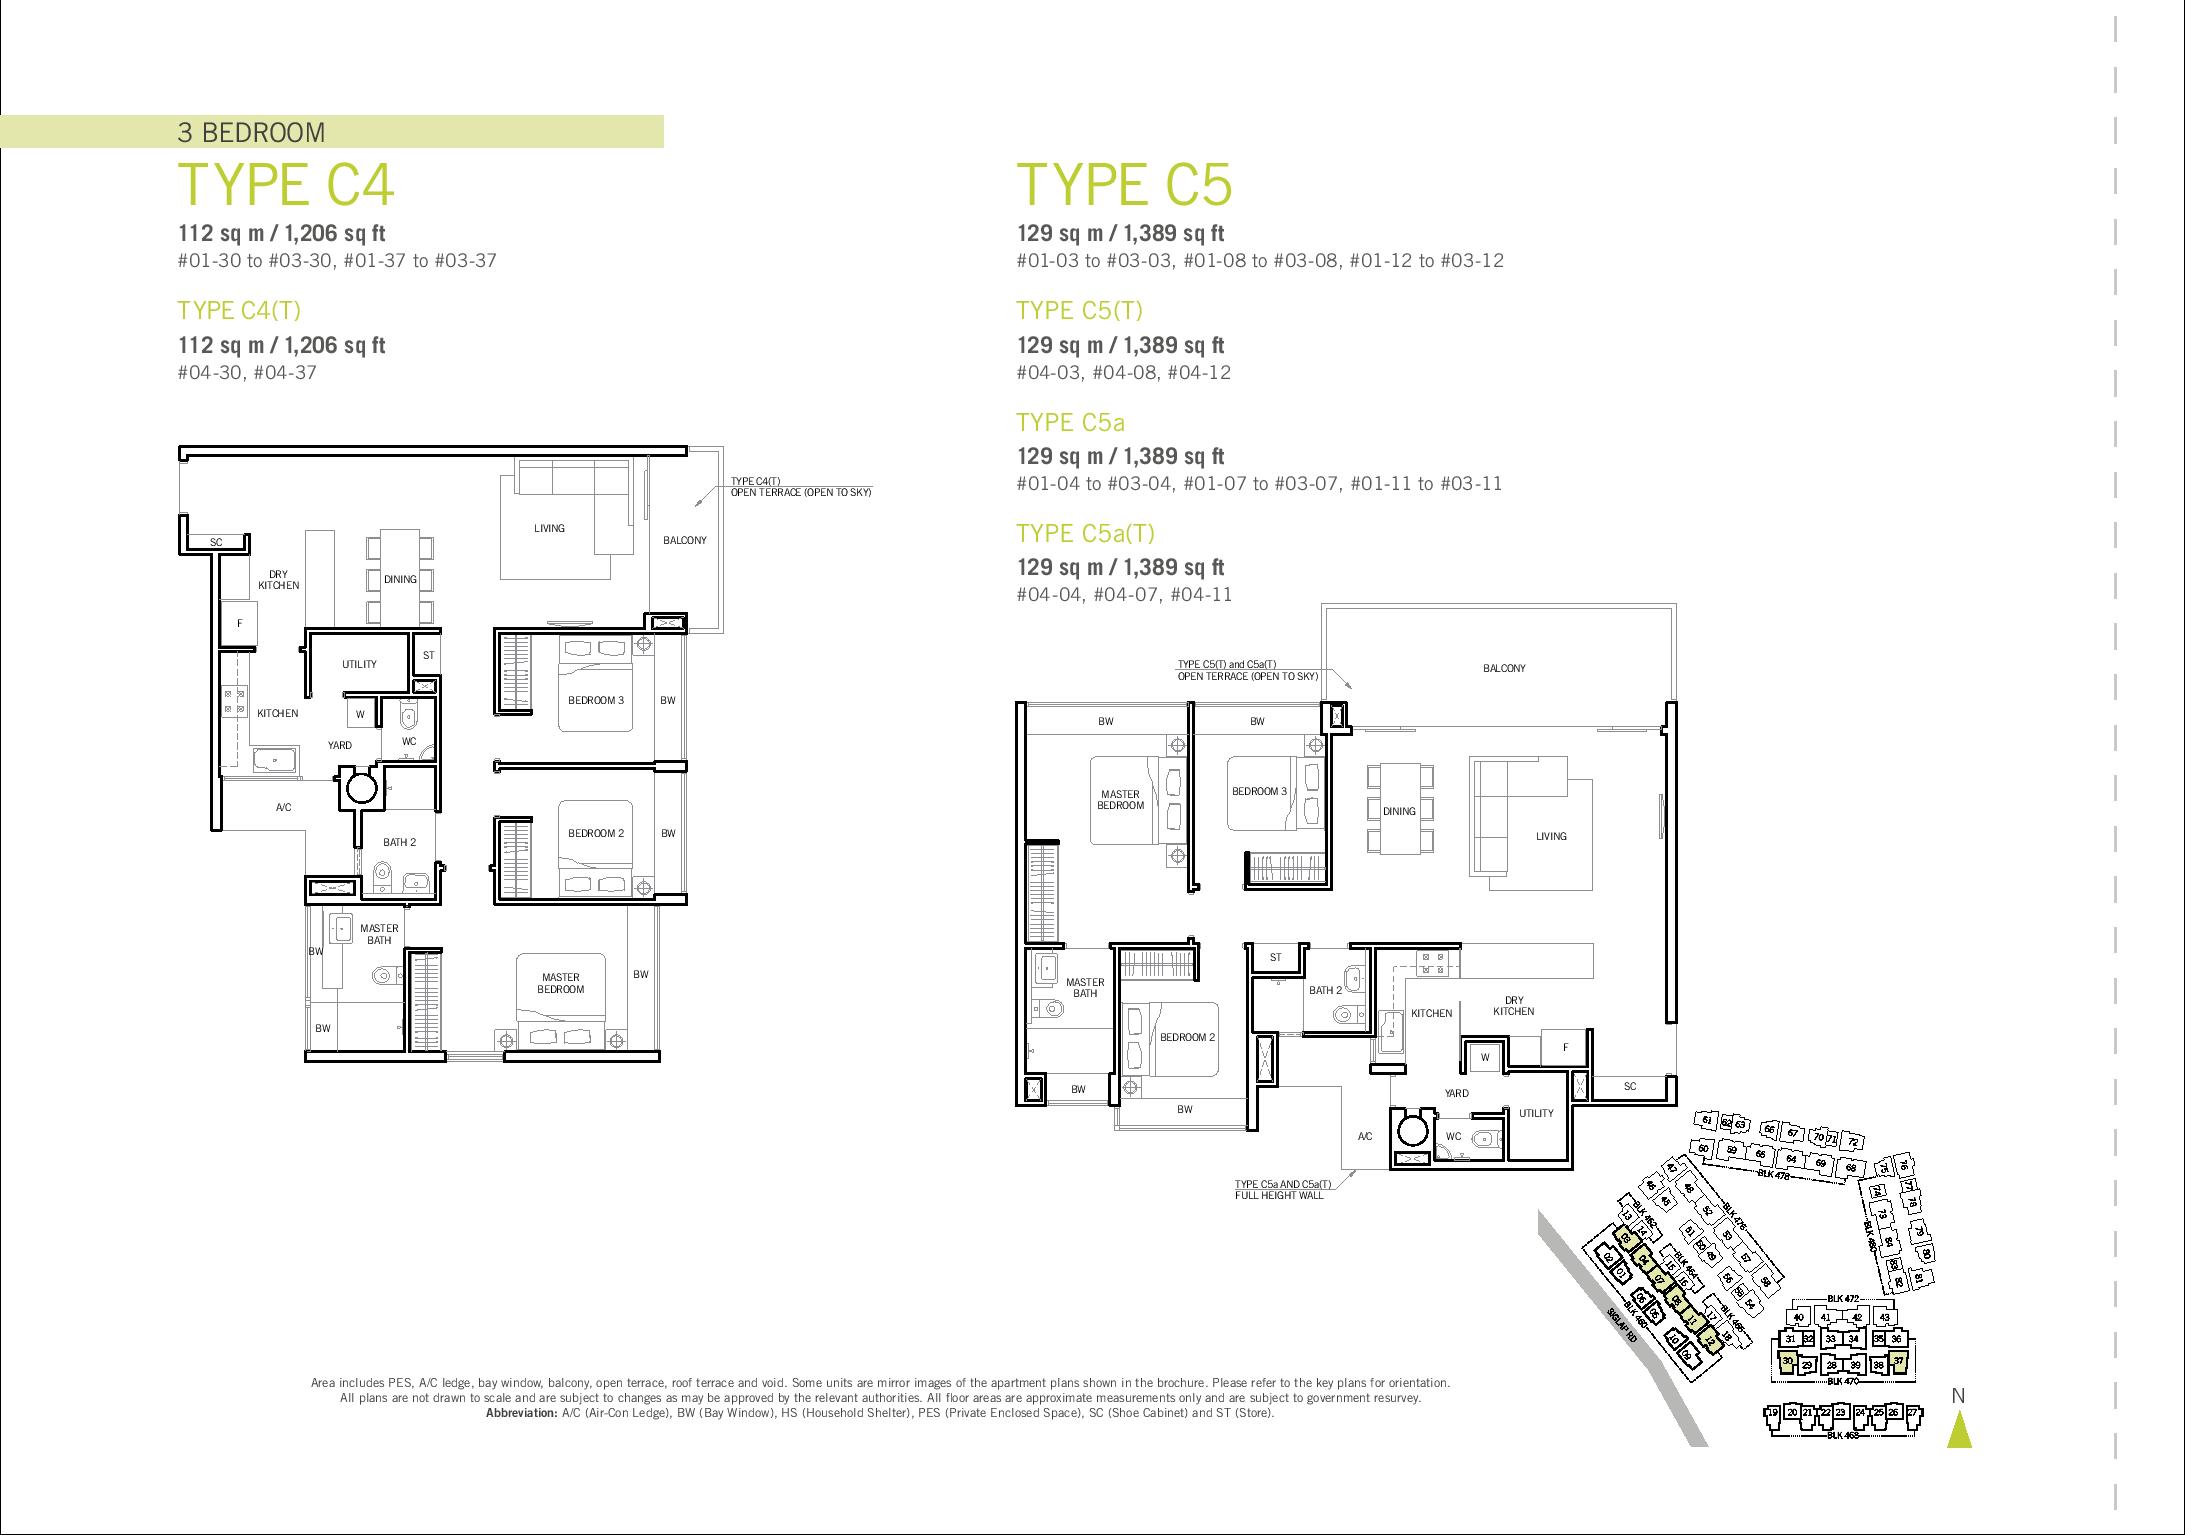 Flamingo Valley 3 Bedroom Type C4 & C5 Floor Plans